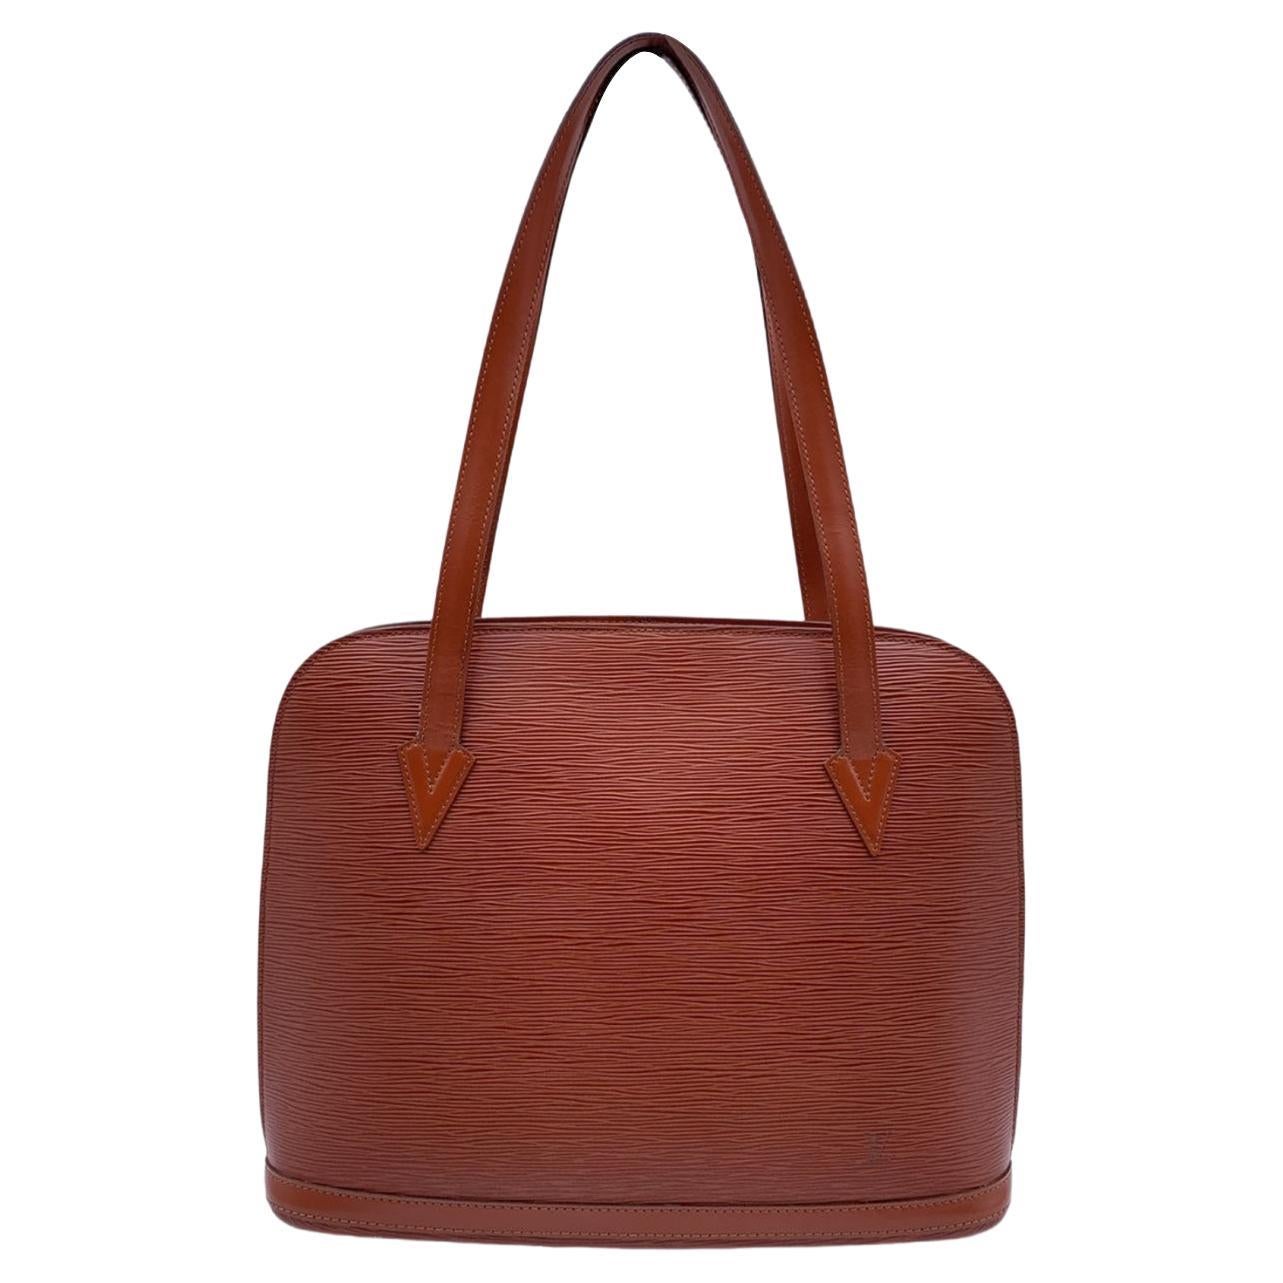 Louis Vuitton Vintage Tan Epi Leather Lussac Tote Shoulder Bag